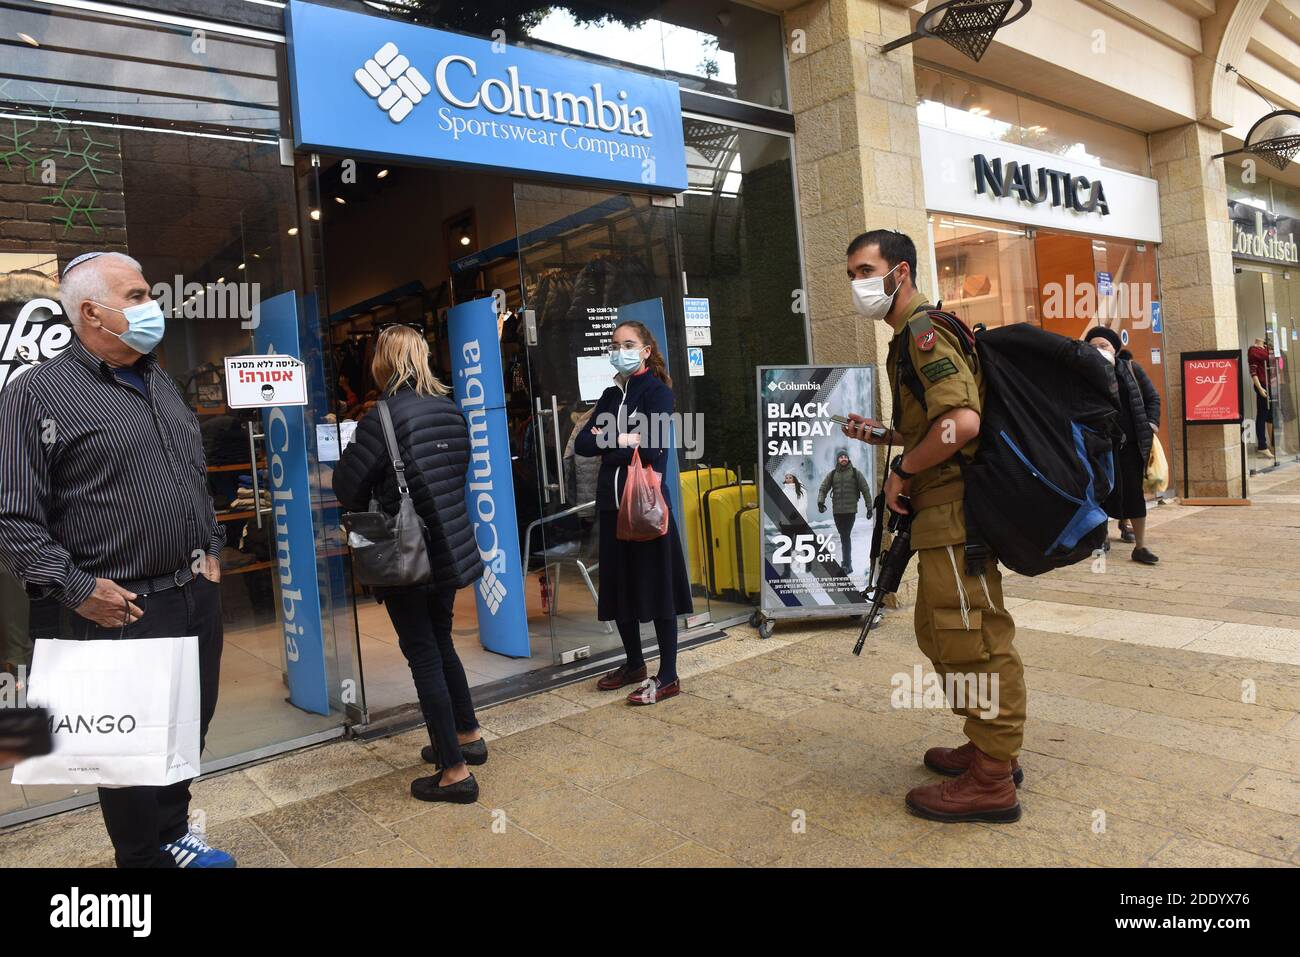 Un soldato israeliano attende di entrare in Colombia a causa delle restrizioni COVID-19 sul Black Friday a Gerusalemme, 27 novembre 2020. Il gabinetto del coronavirus ha riaperto i centri commerciali e i negozi nonostante i crescenti casi di infezione quotidiana che superano i 1,000. Foto di Debbie Hill/UPI Foto Stock